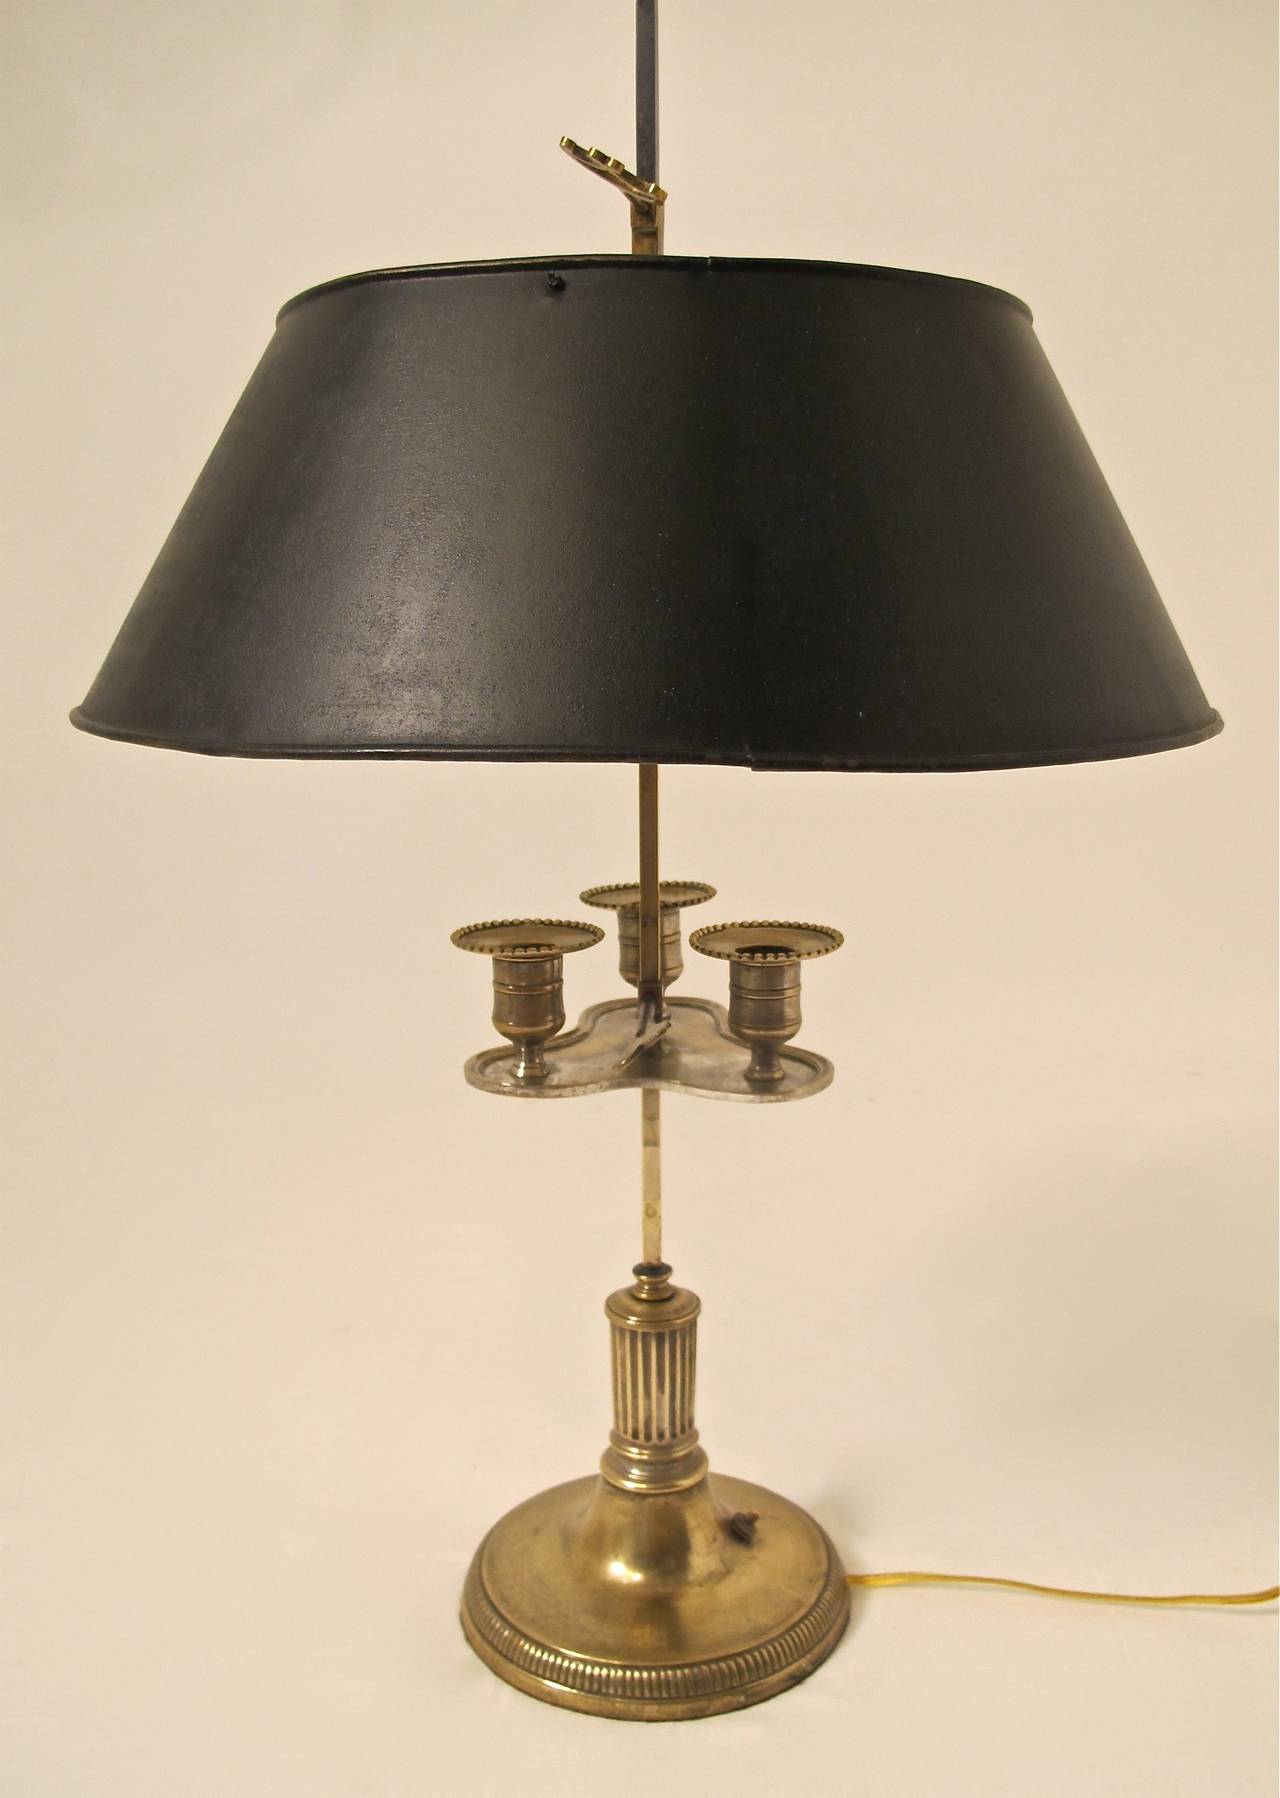 Frühe Messing-Kerzen-Bouillottenlampe aus dem 19. Jahrhundert mit Resten von Silberblech, jetzt auf Elektrobetrieb umgestellt.